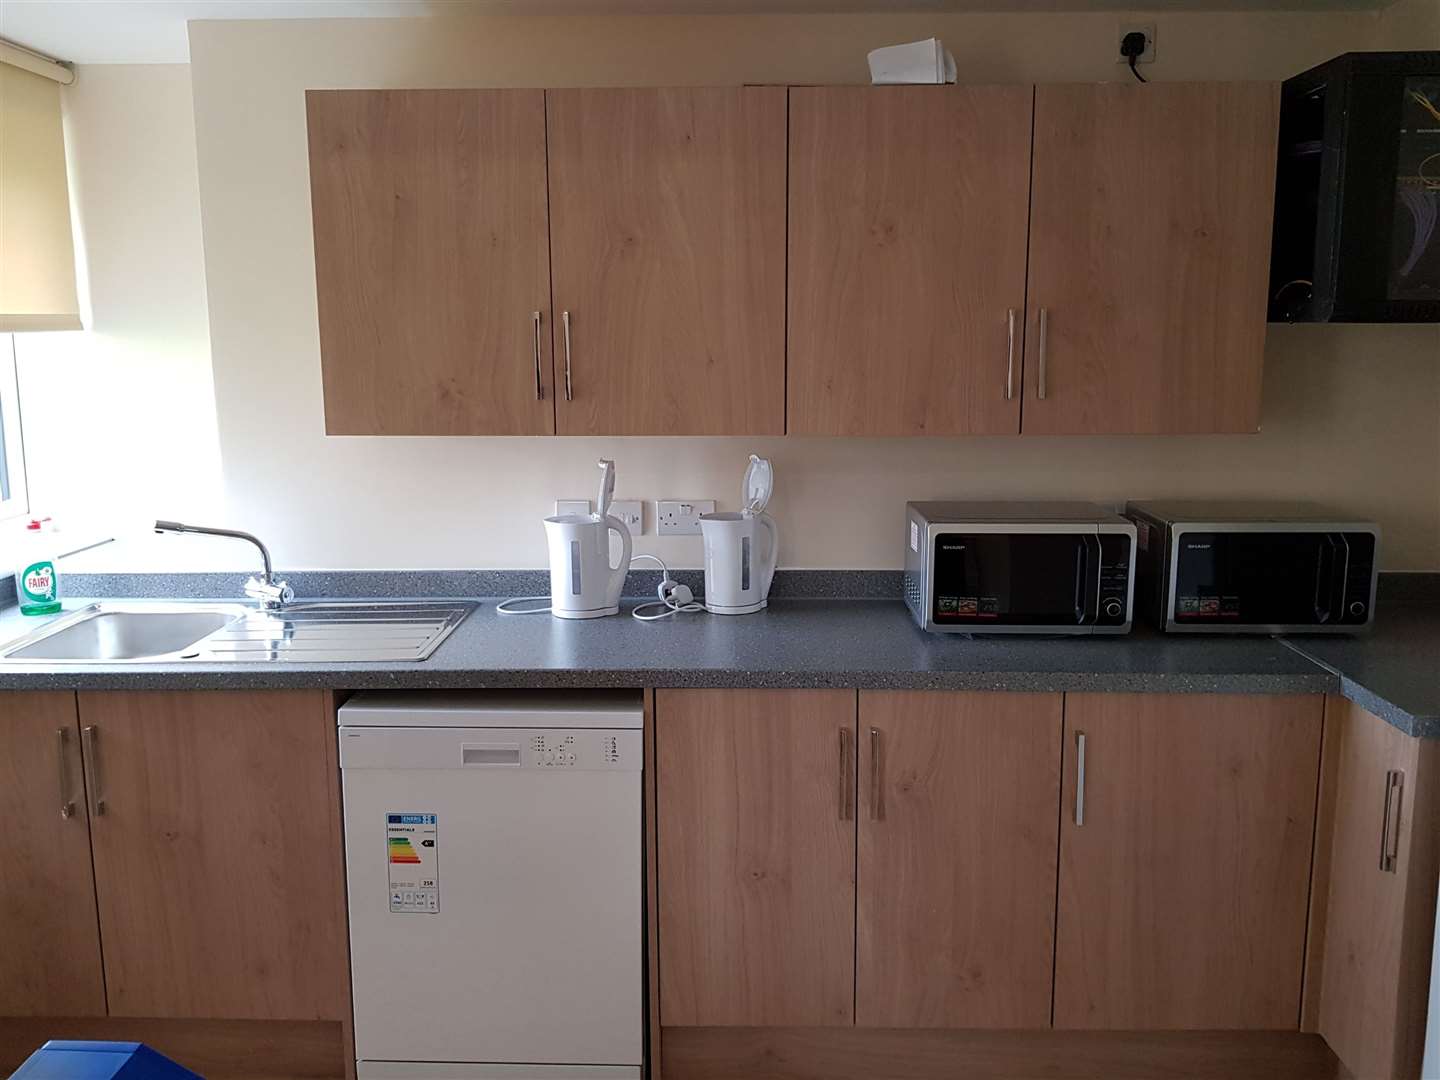 Kitchen facilities at Loch Court.